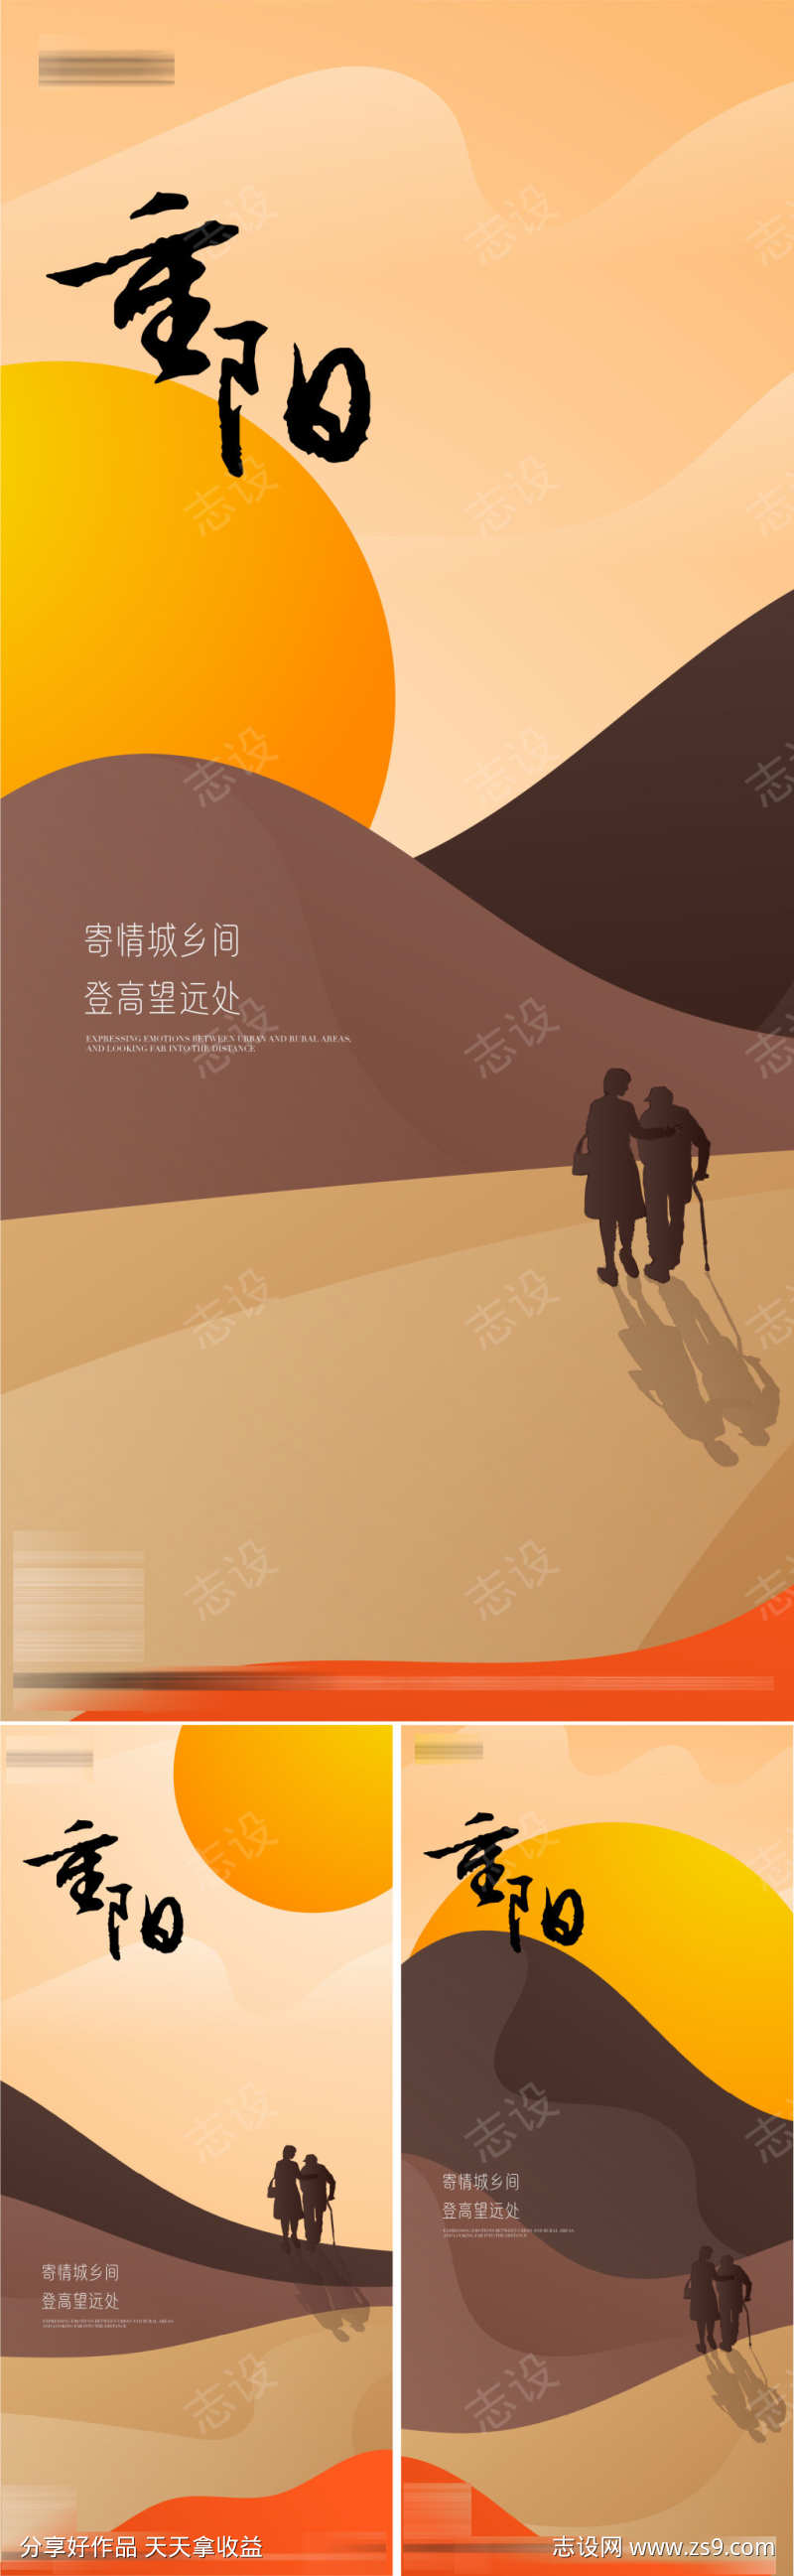 重阳节系列节日海报